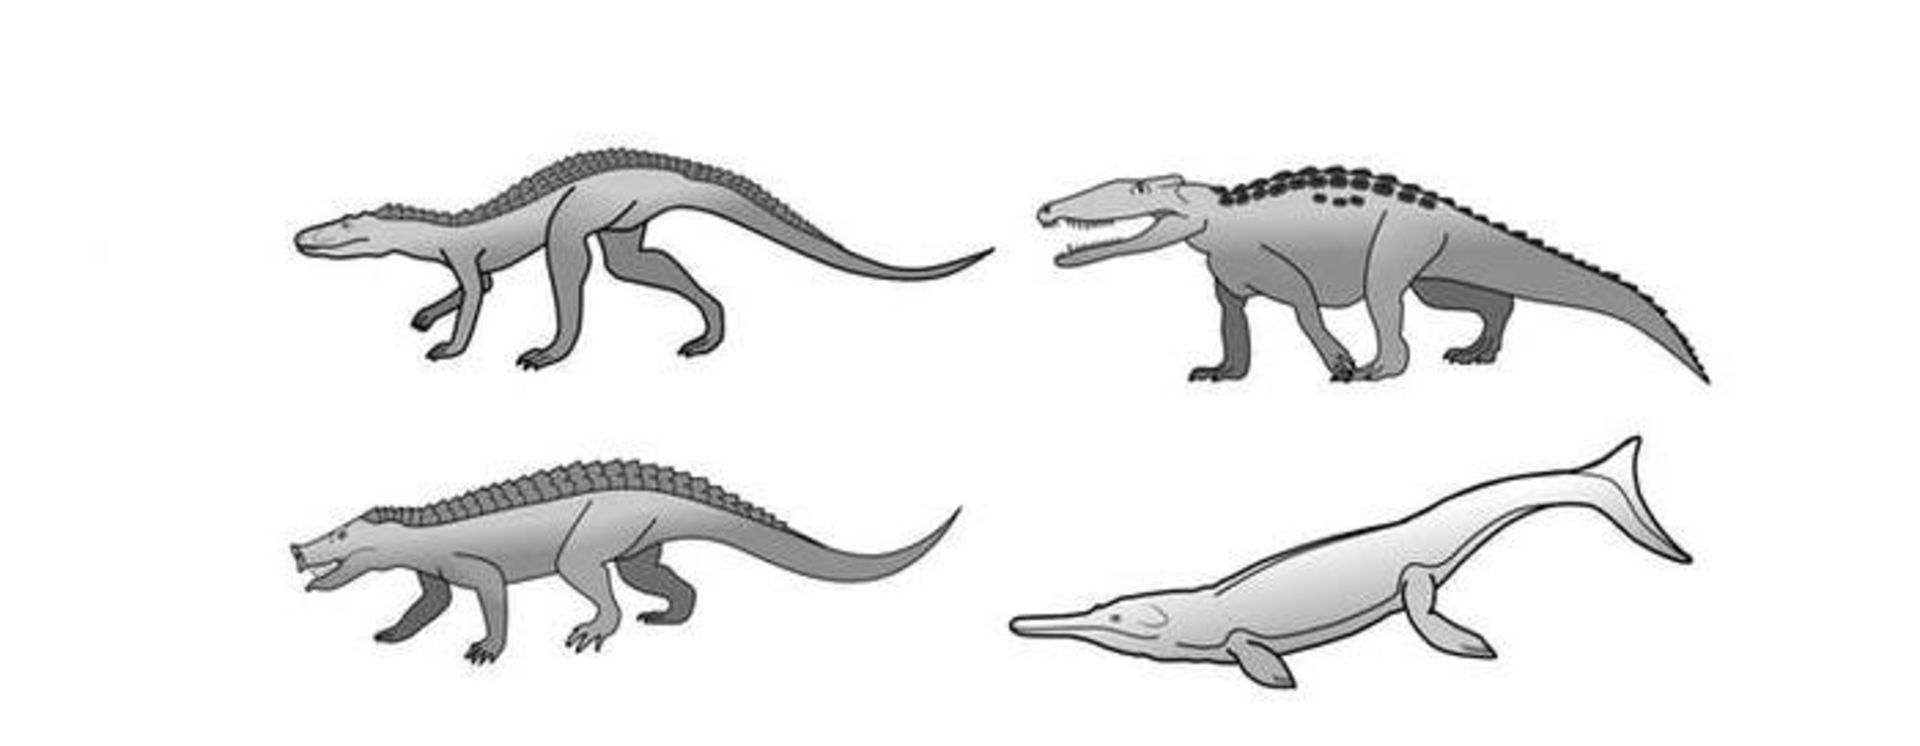 مرجع متخصصين ايران تمساح هاي پيش از تاريخ / crocodiles from prehistory